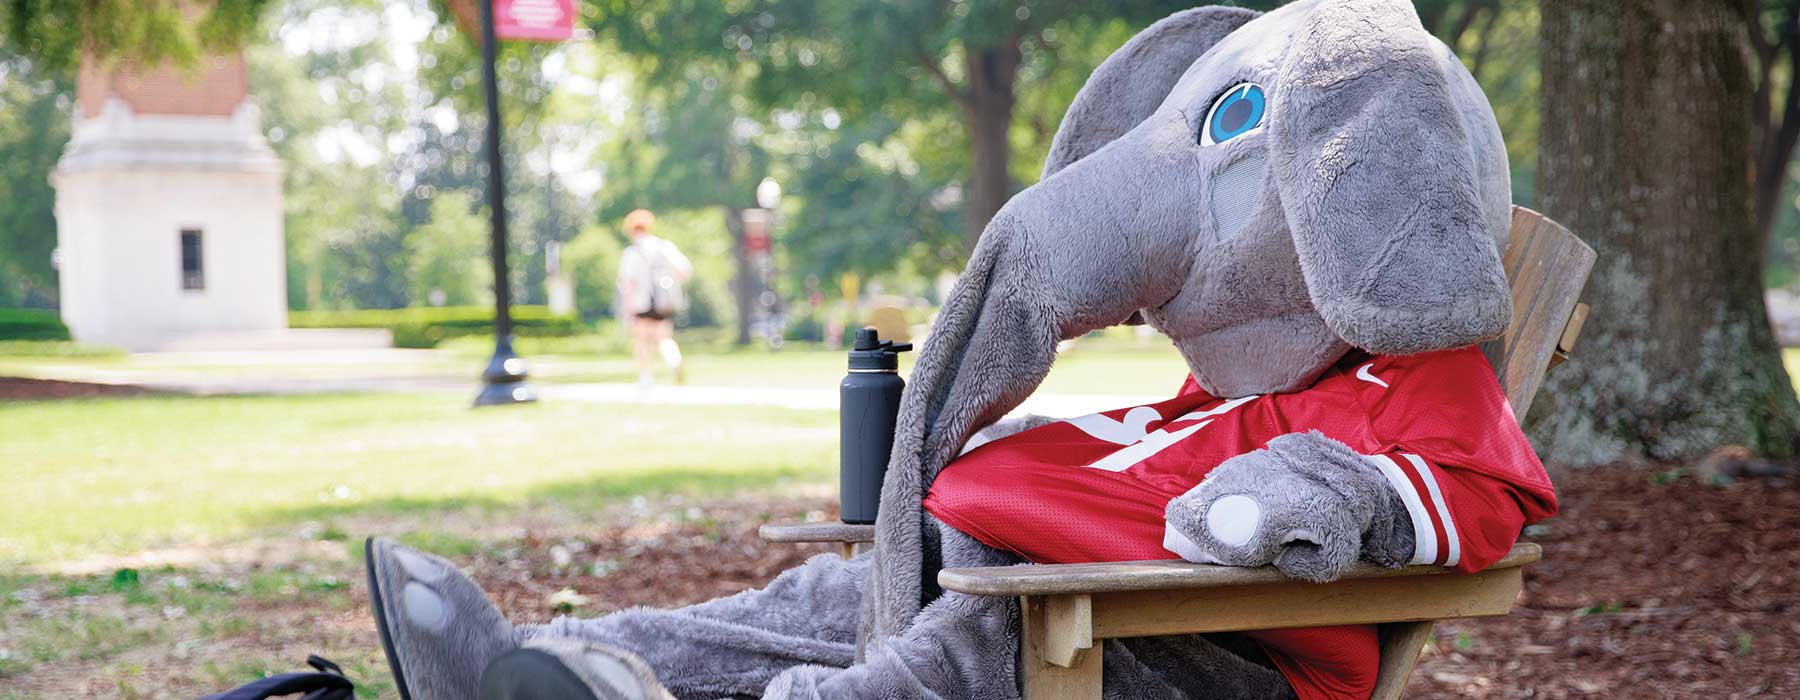 Big Al, UA's elephant mascot, relaxing on the UA Quad